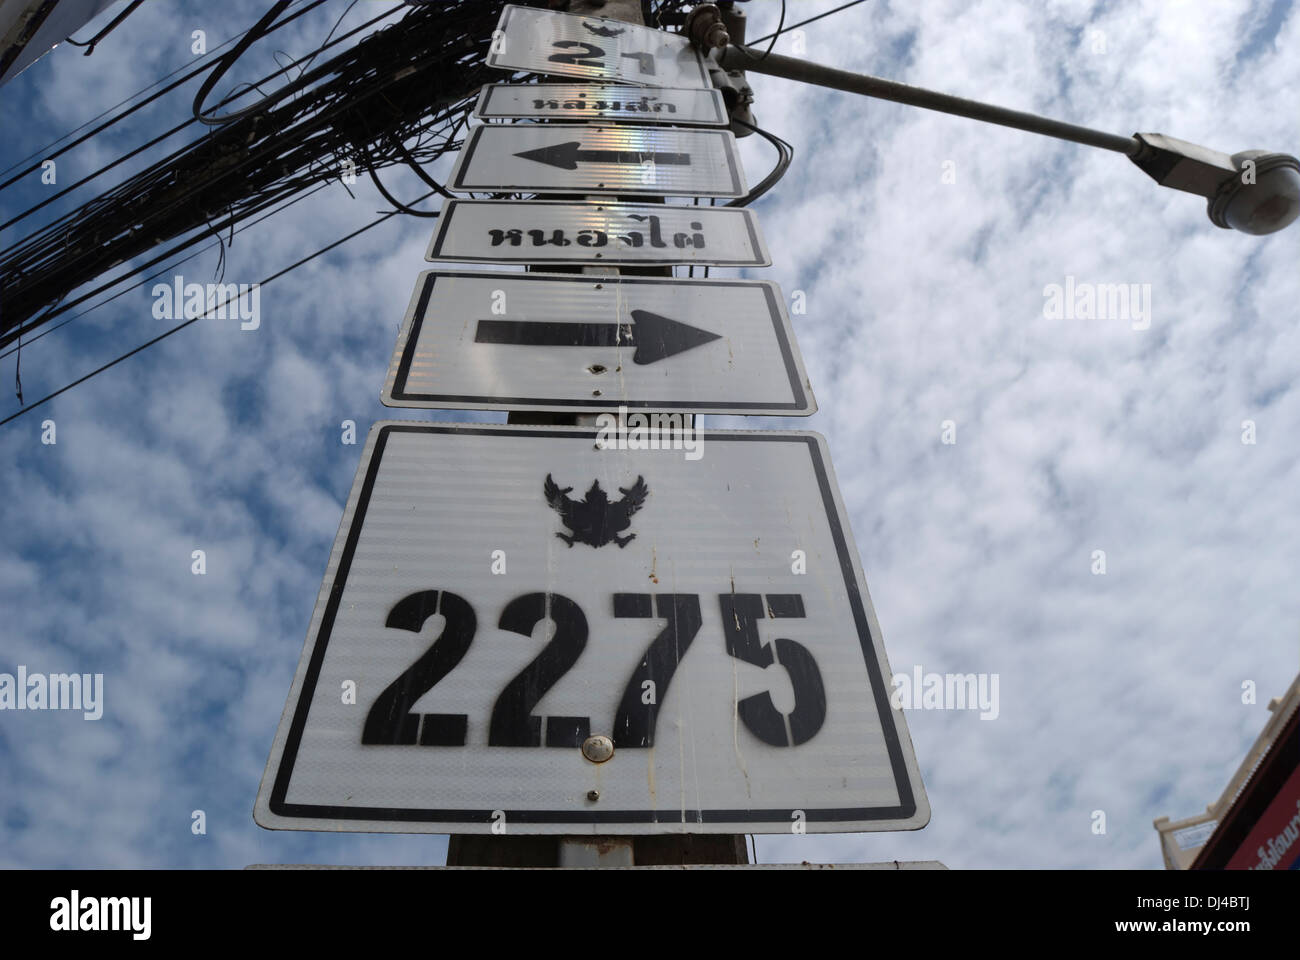 La signalisation routière à phetchabun, Thaïlande, montrant la route nombre et la direction Banque D'Images